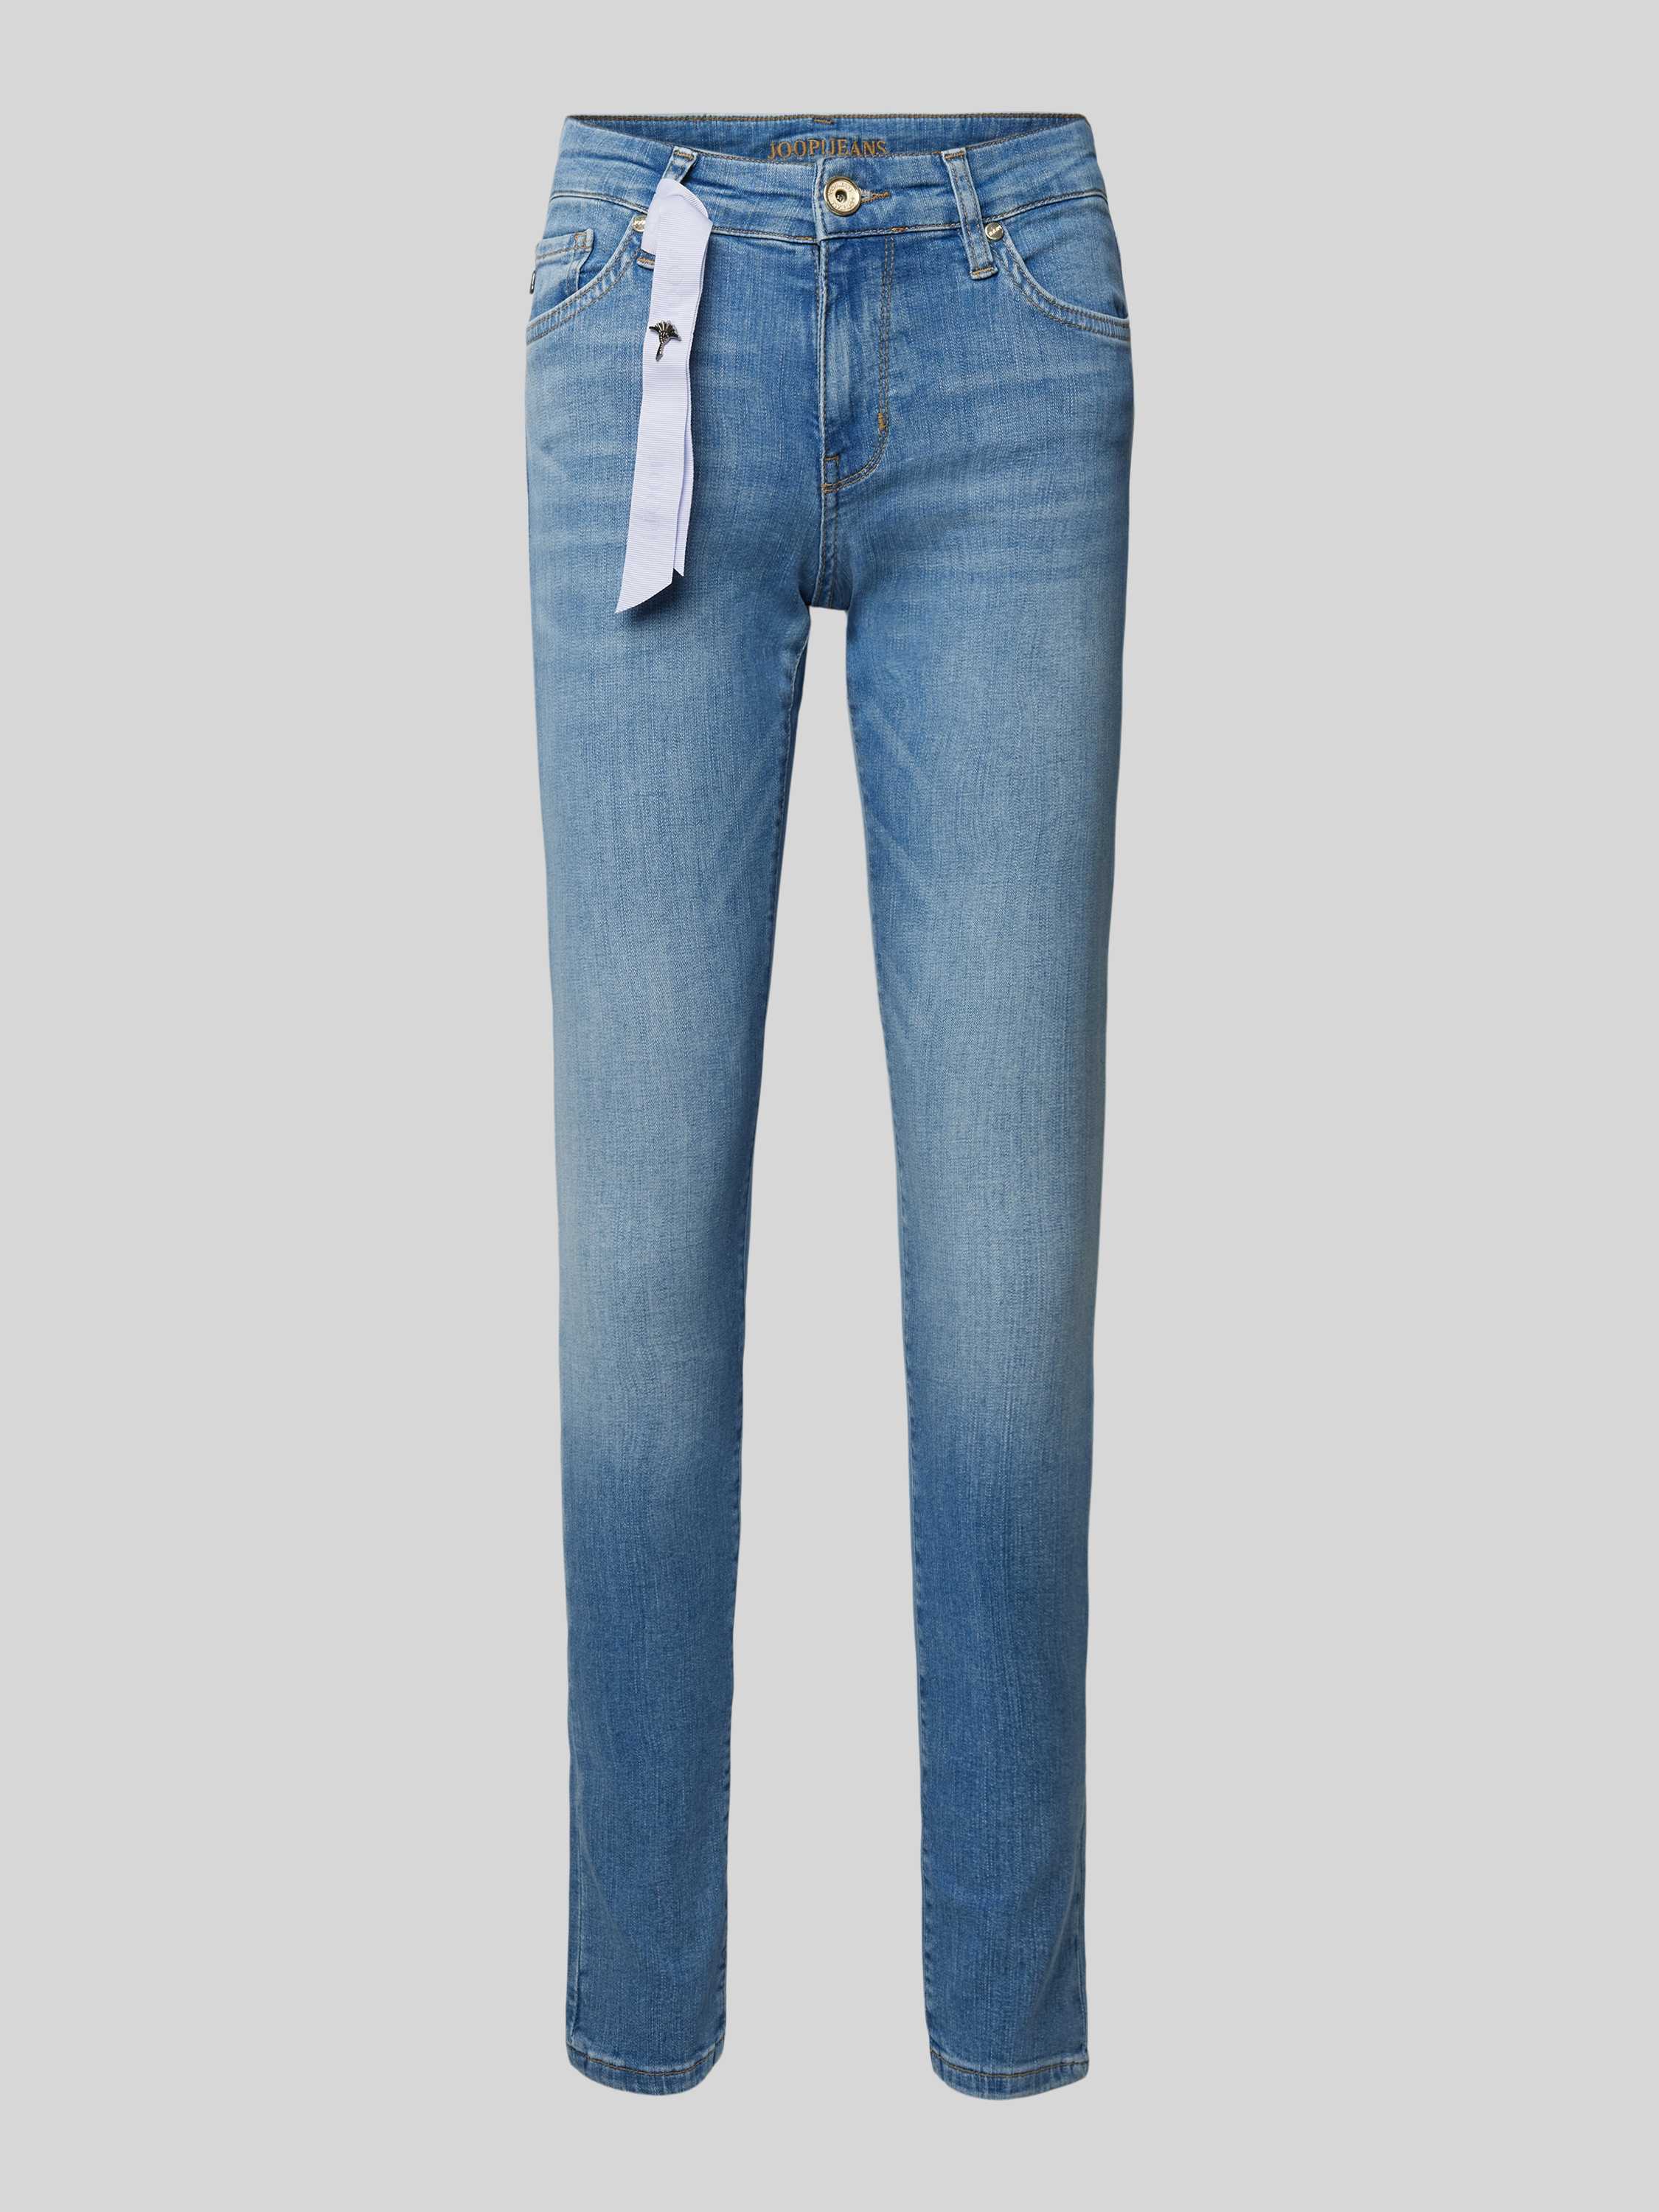 Jeans im 5-Pocket-Design